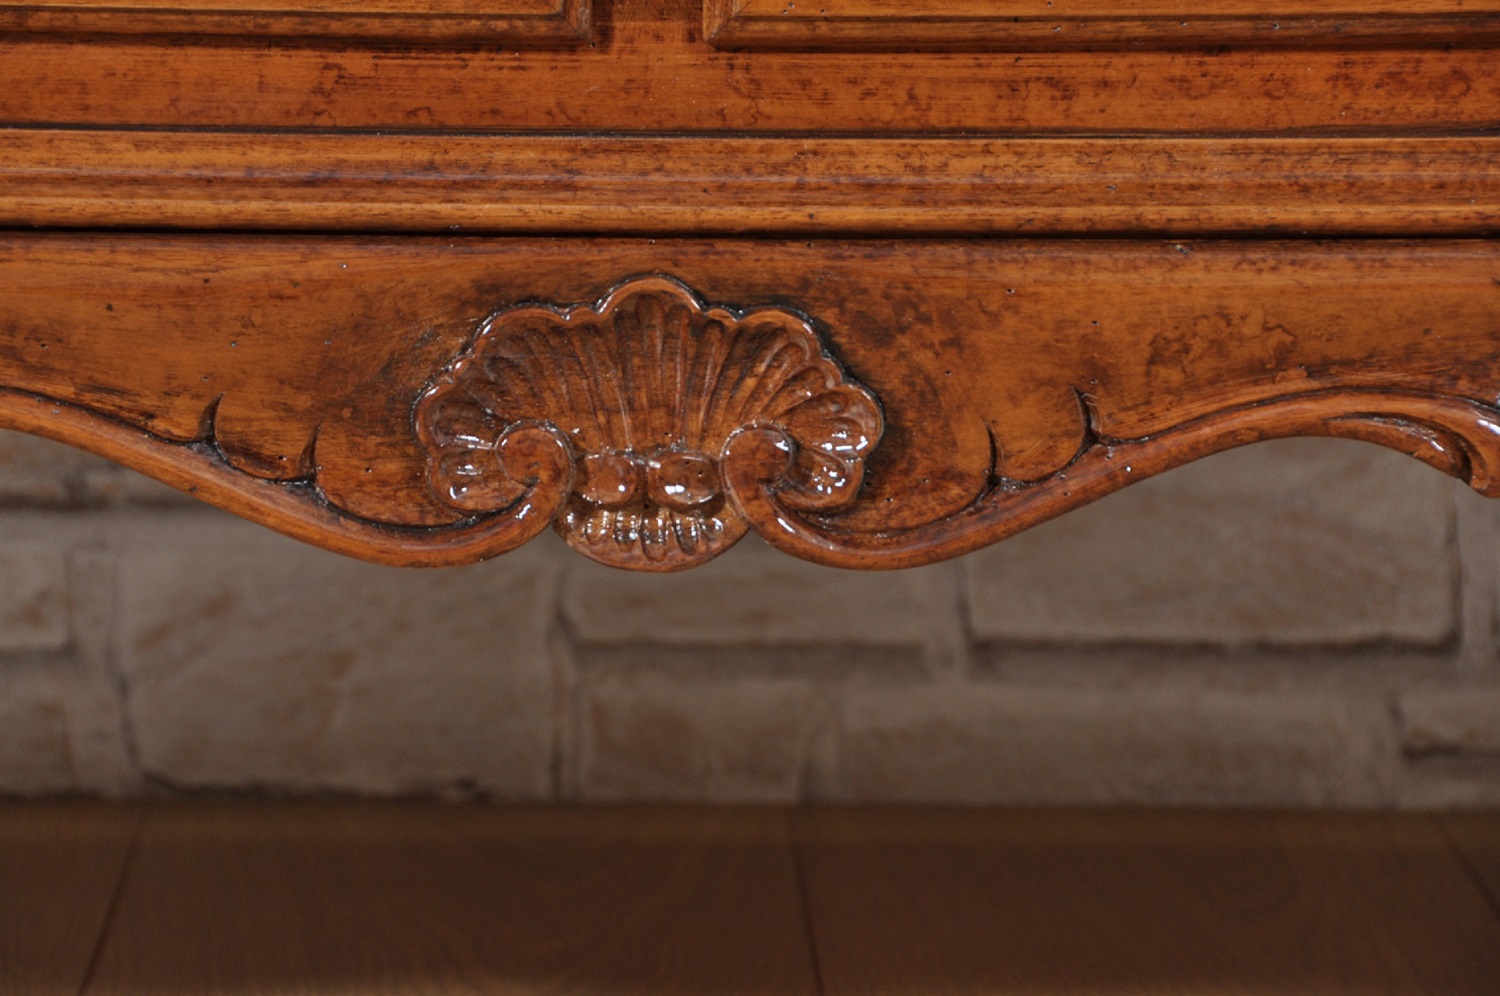 la conchiglia intagliata a mano come il modello originale del tavolo da salotto rettangolare in stile classico barocco veneziano del XVIII secolo è realizzata su noce massello